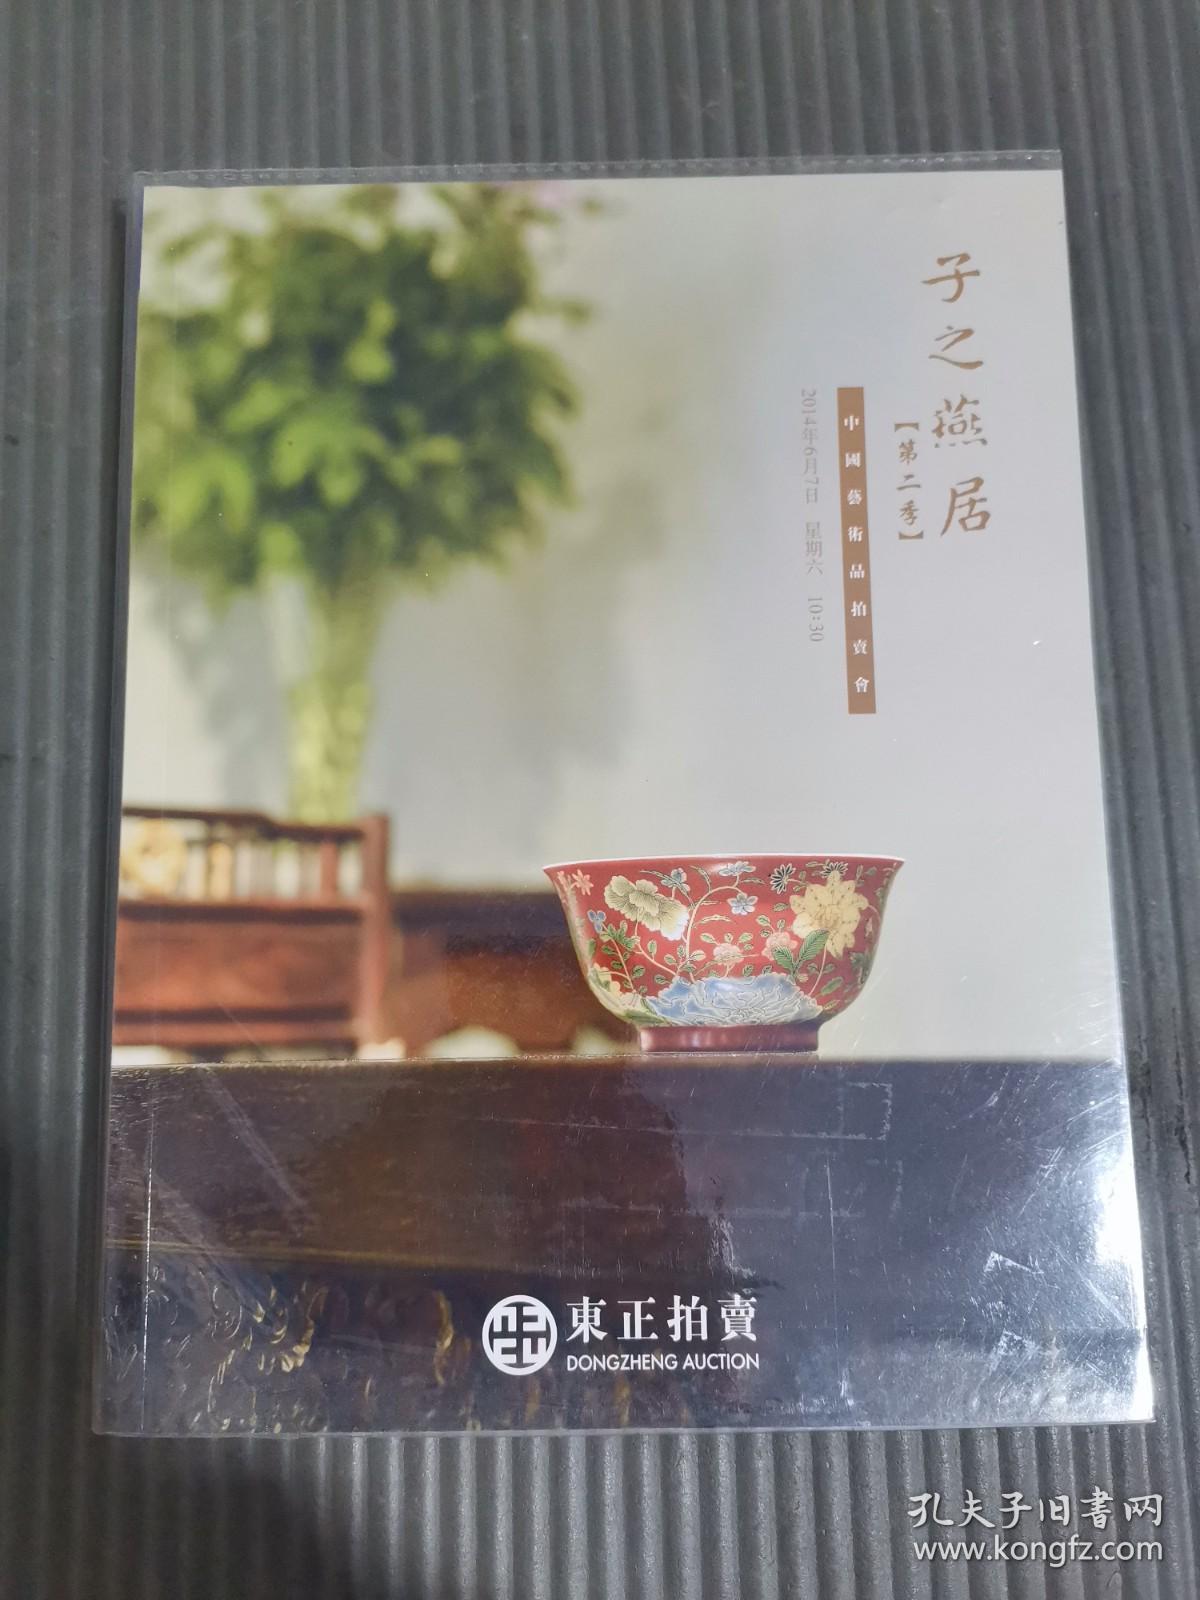 2014年东正拍卖子之燕居第二季中国艺术品拍卖会 (有塑封书皮，成交价笔记)